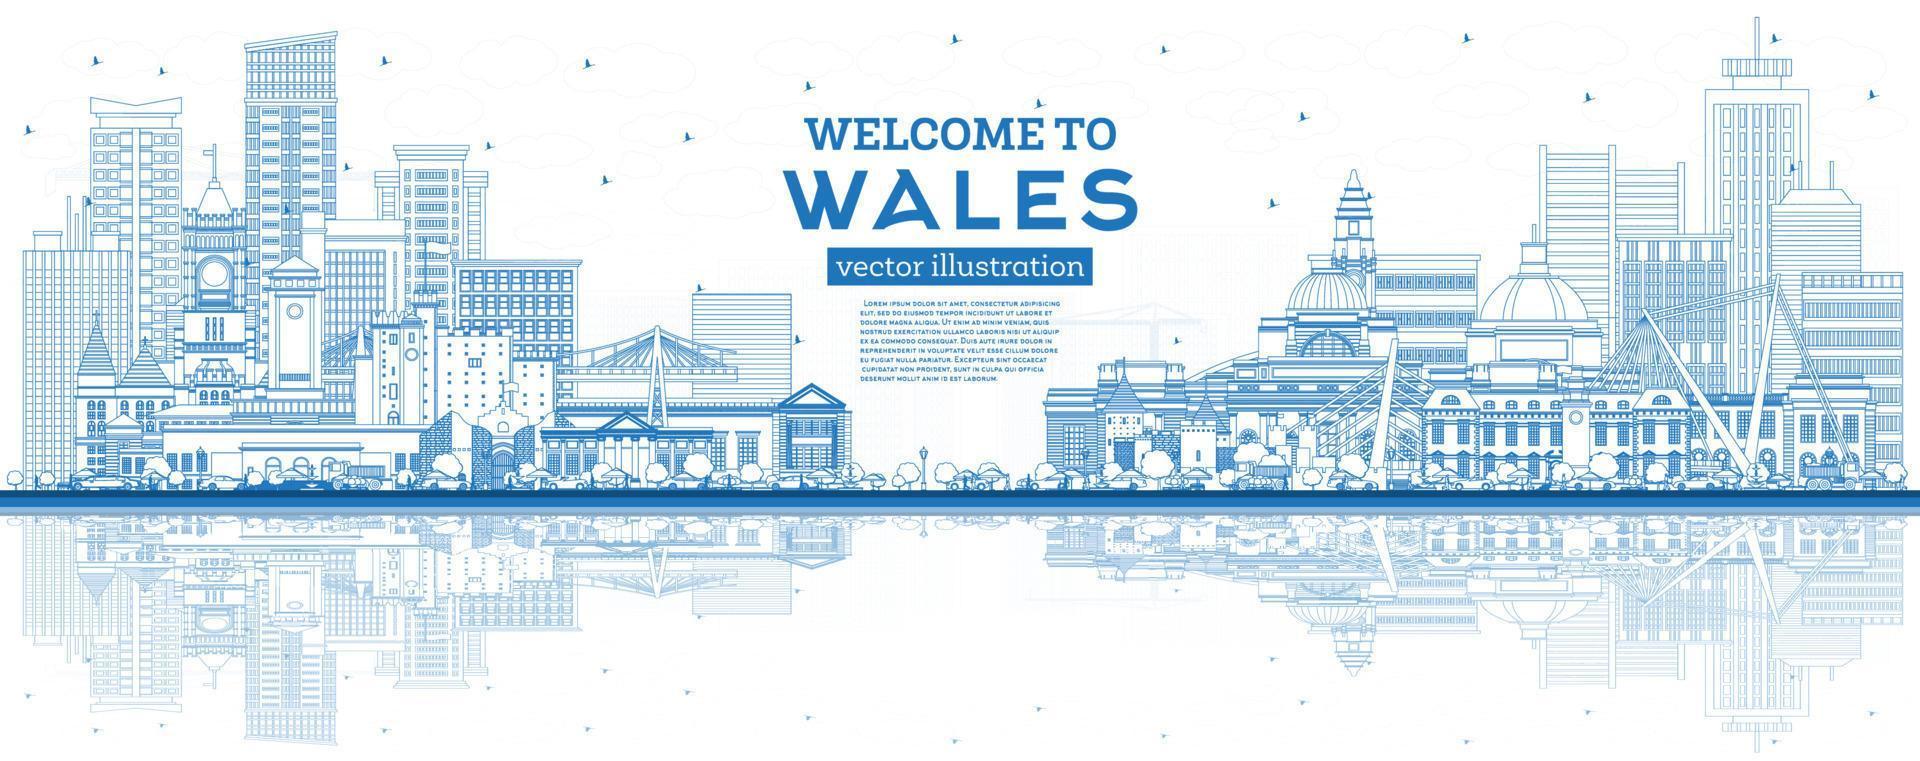 schets Welkom naar Wales stad horizon met blauw gebouwen. vector